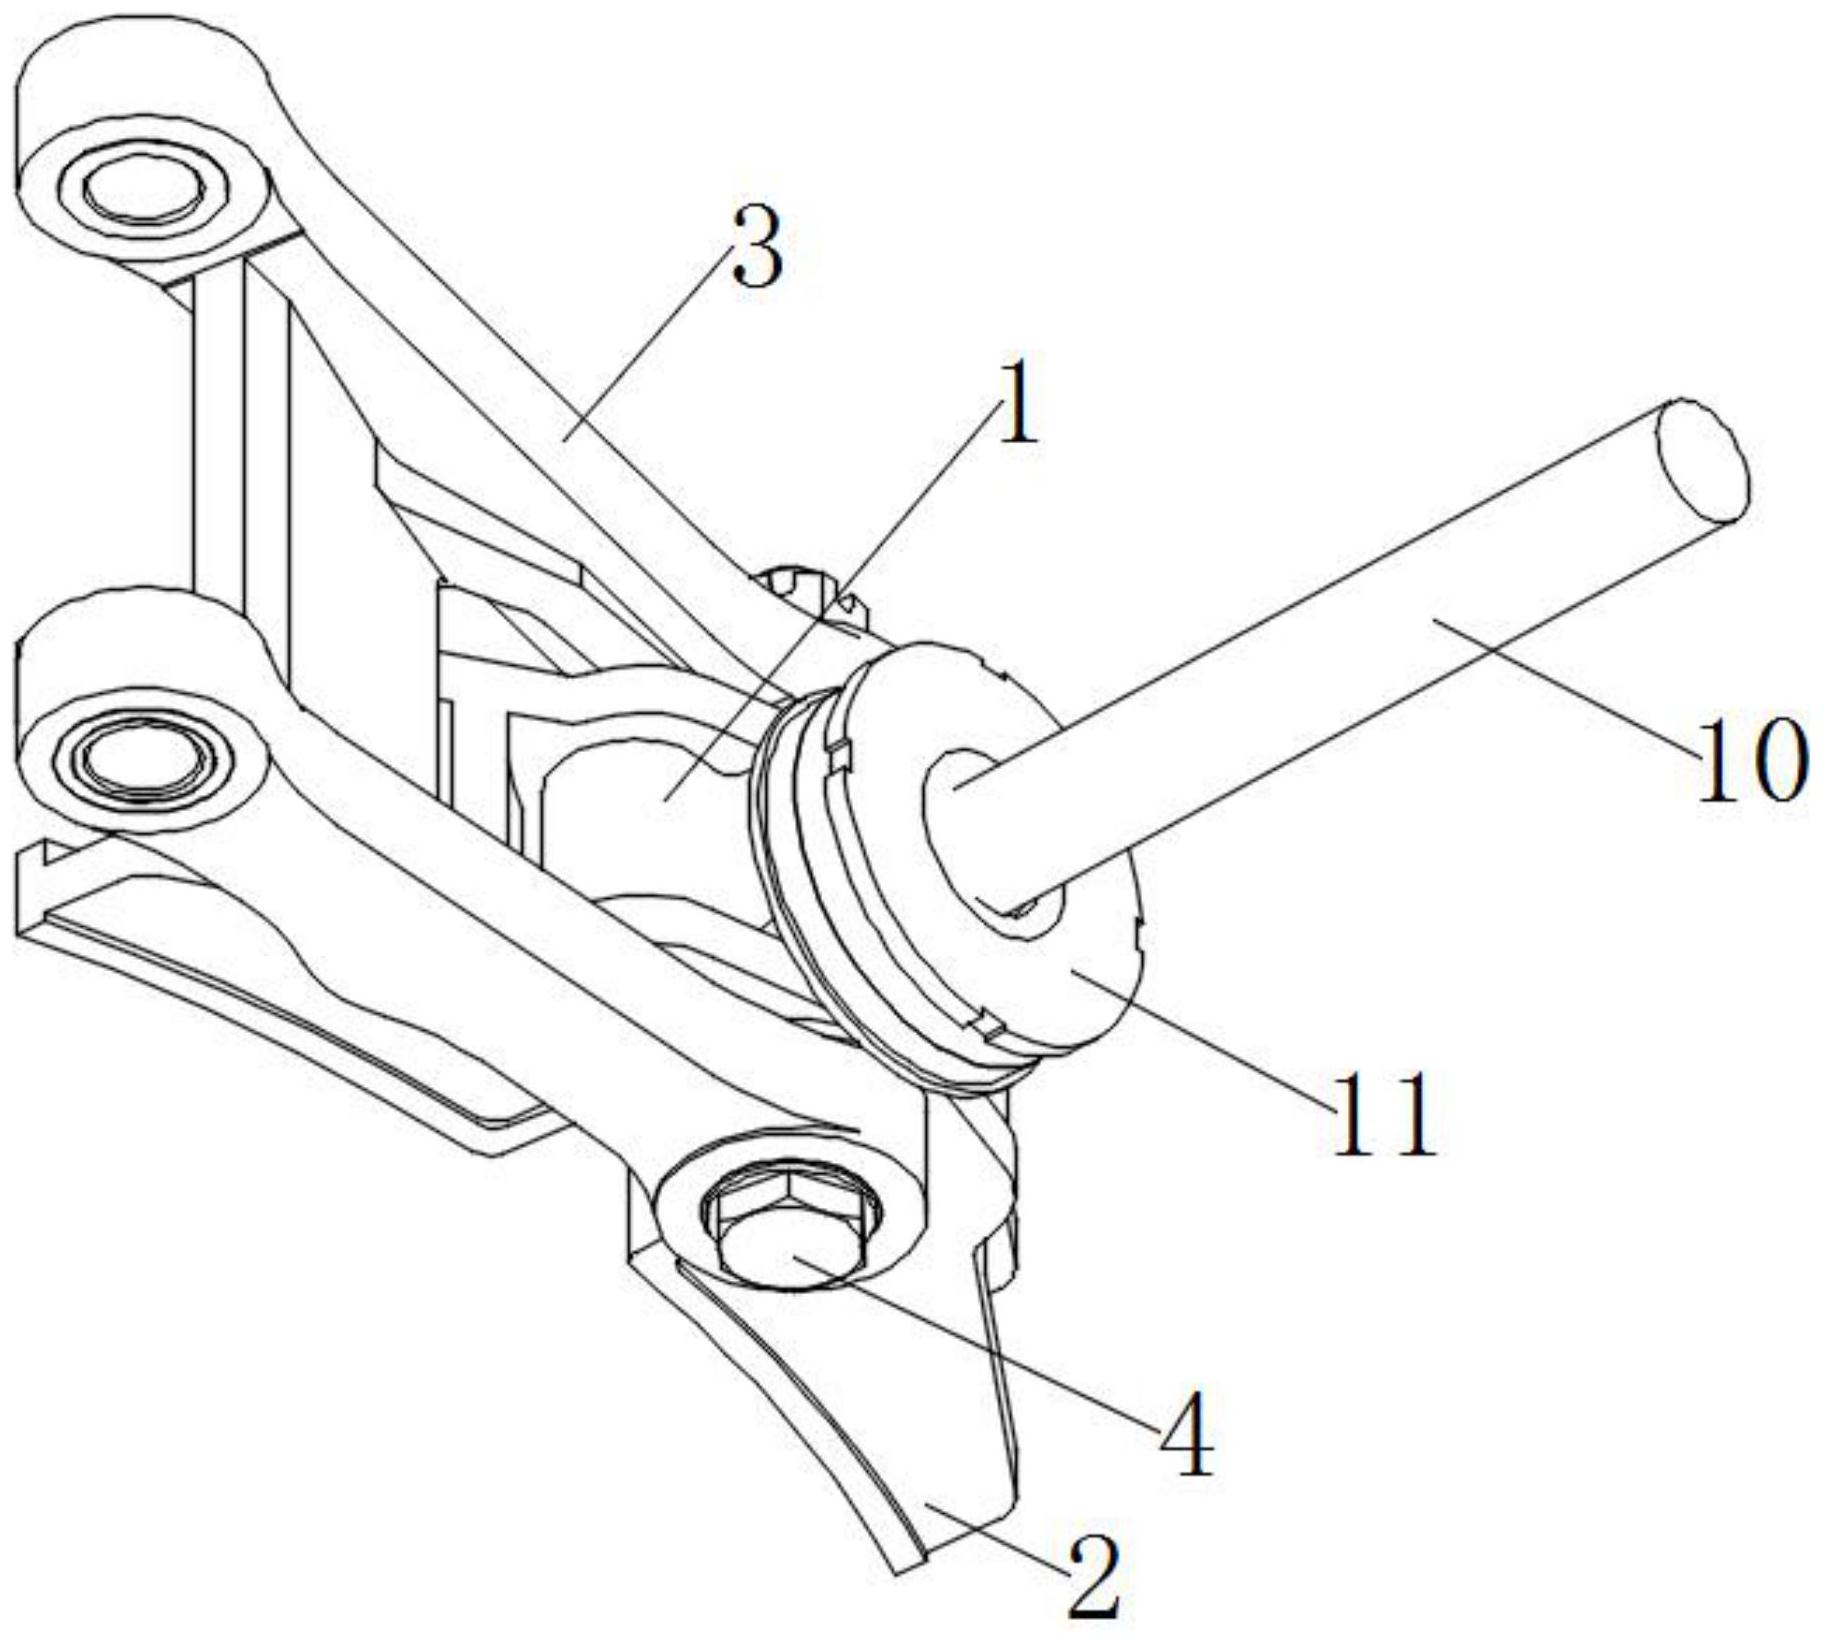 知识产权 专利信息 专利详情专利名称 轨道制动器中的闸瓦与车轮踏面